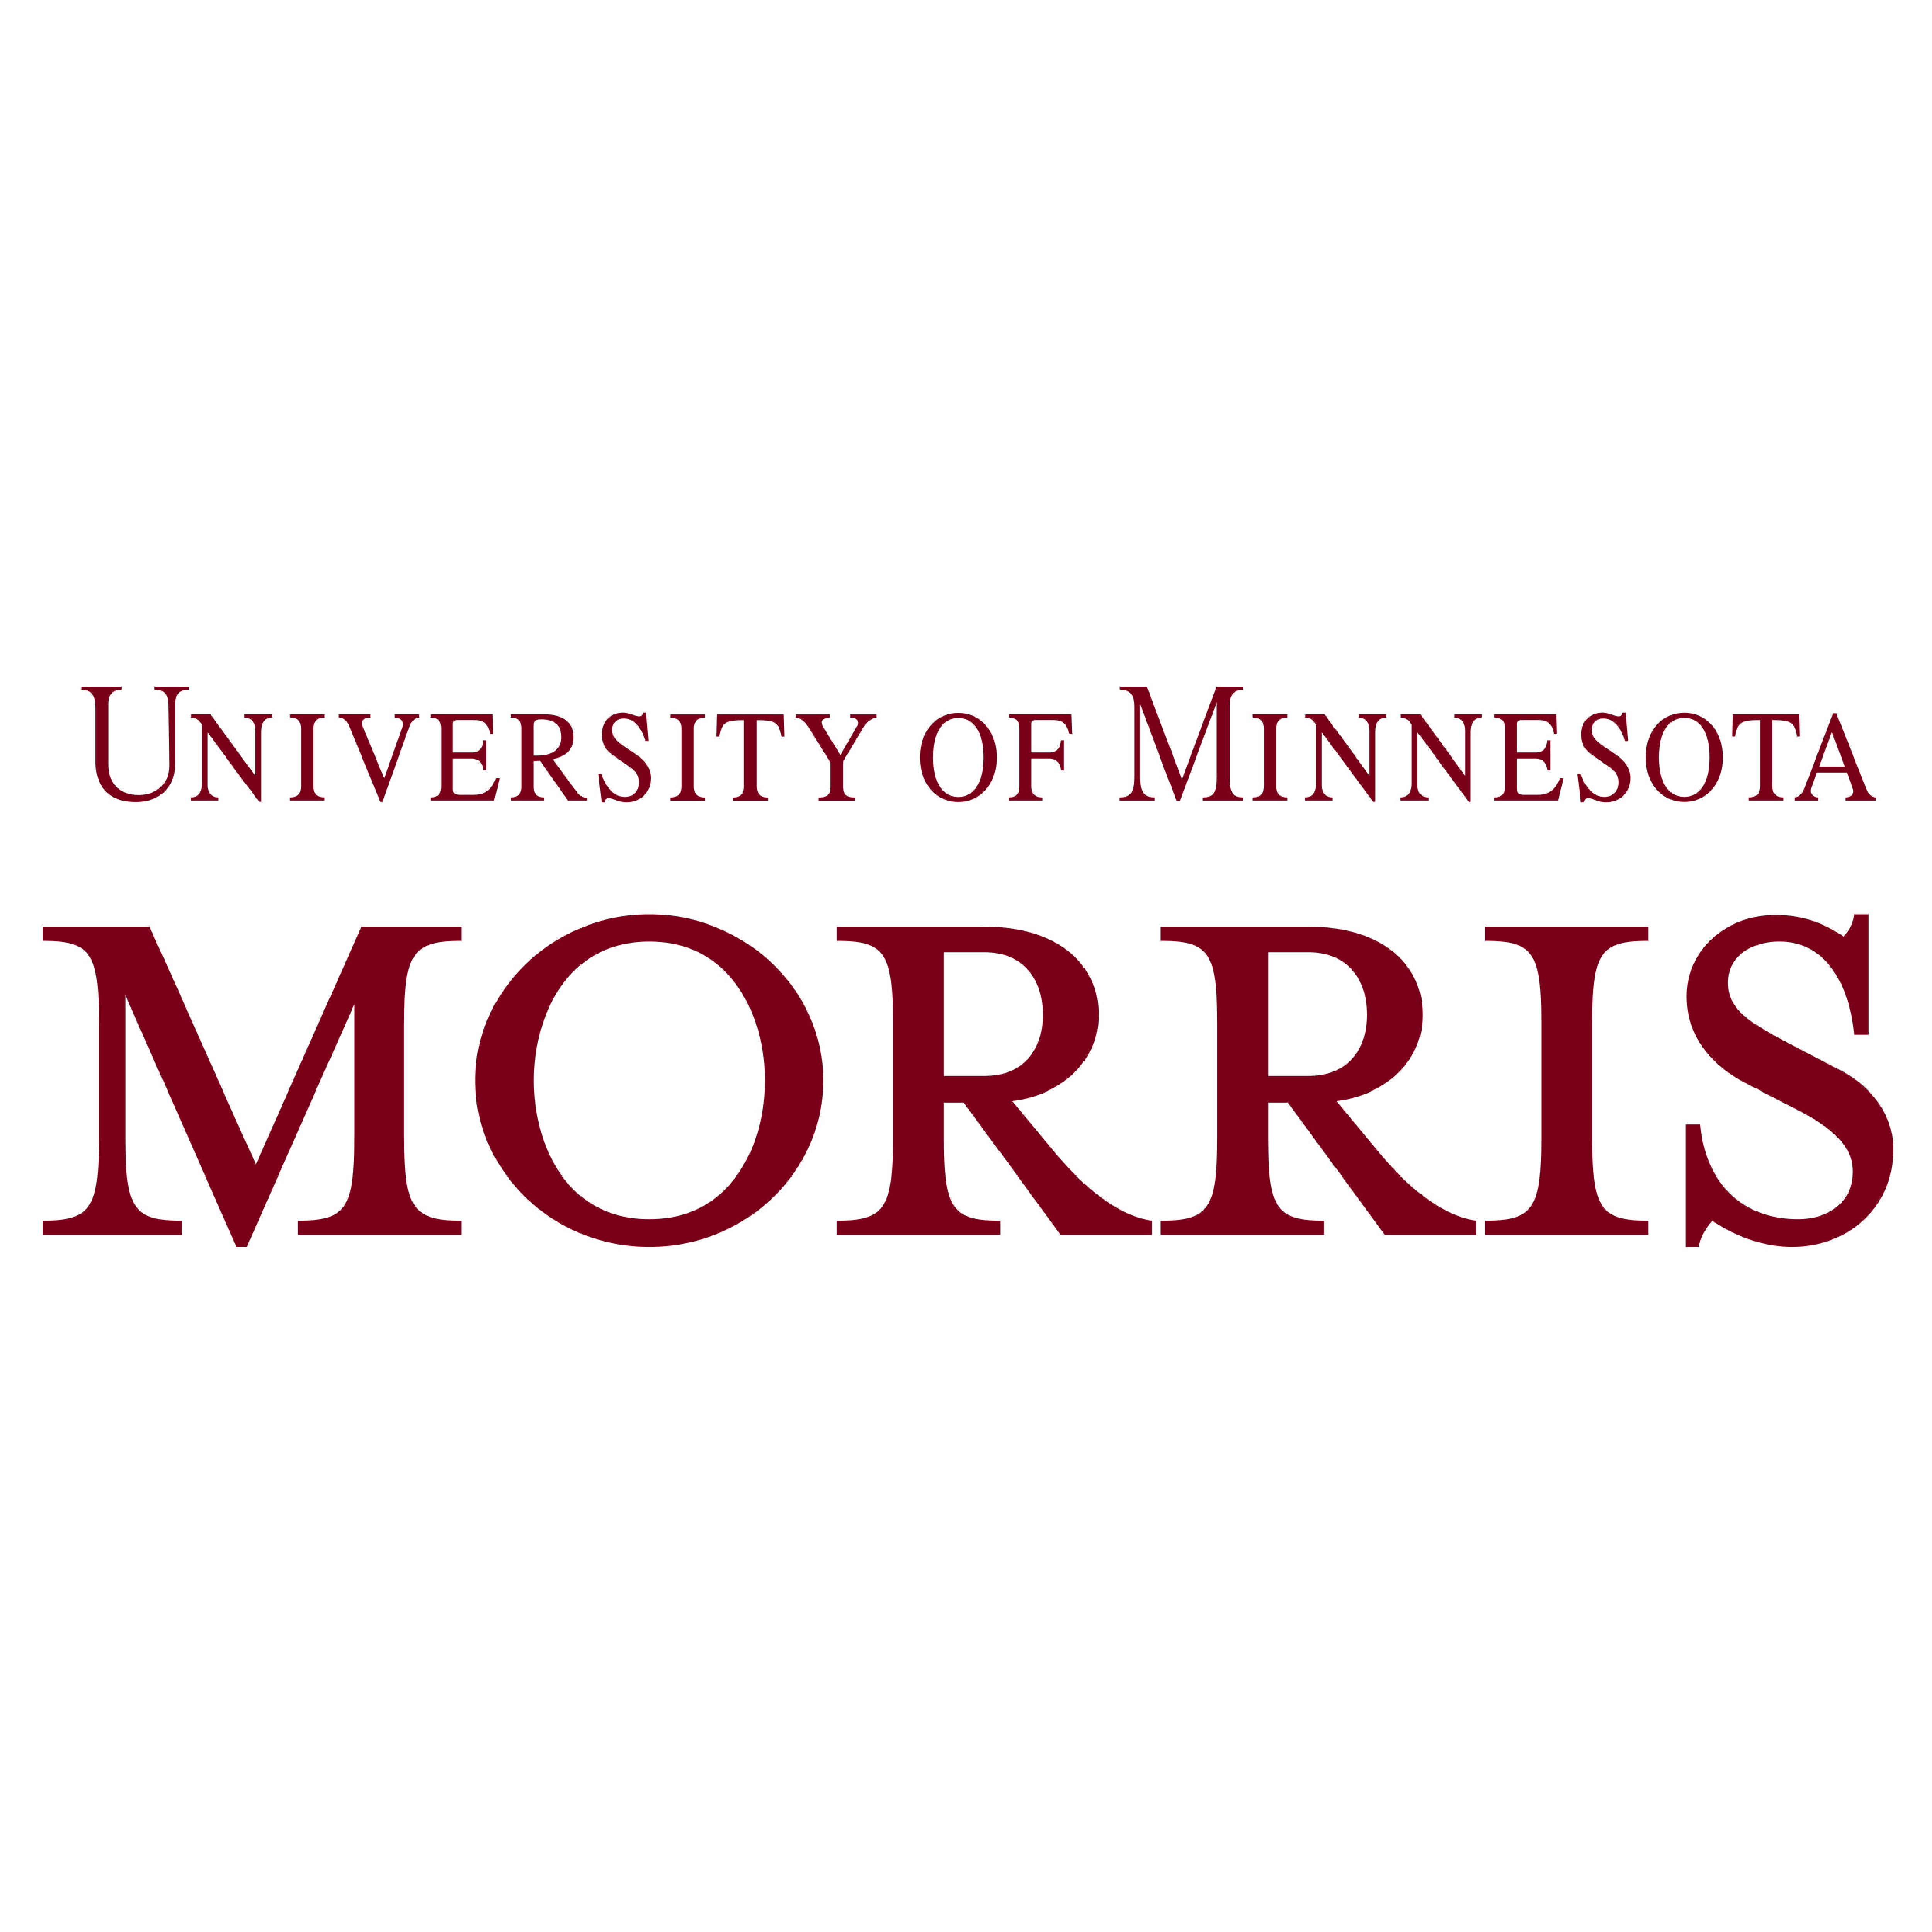 The logo for the University of Minnesota Morris.